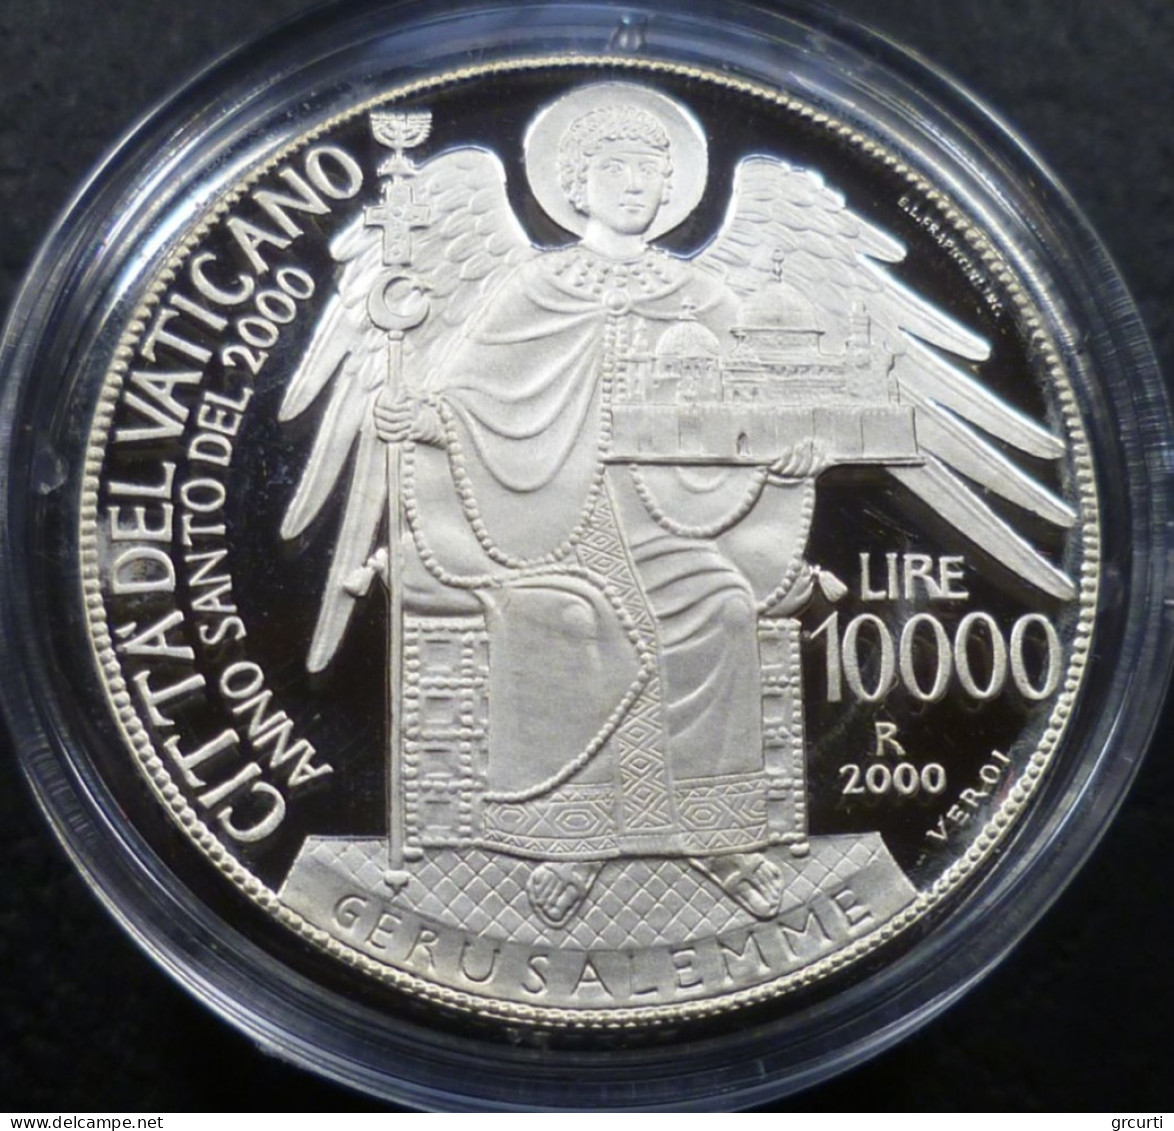 Vaticano - 12 x 10.000 Lire 1995÷2000 - Verso l'Anno Santo del 2000 - Serie completa